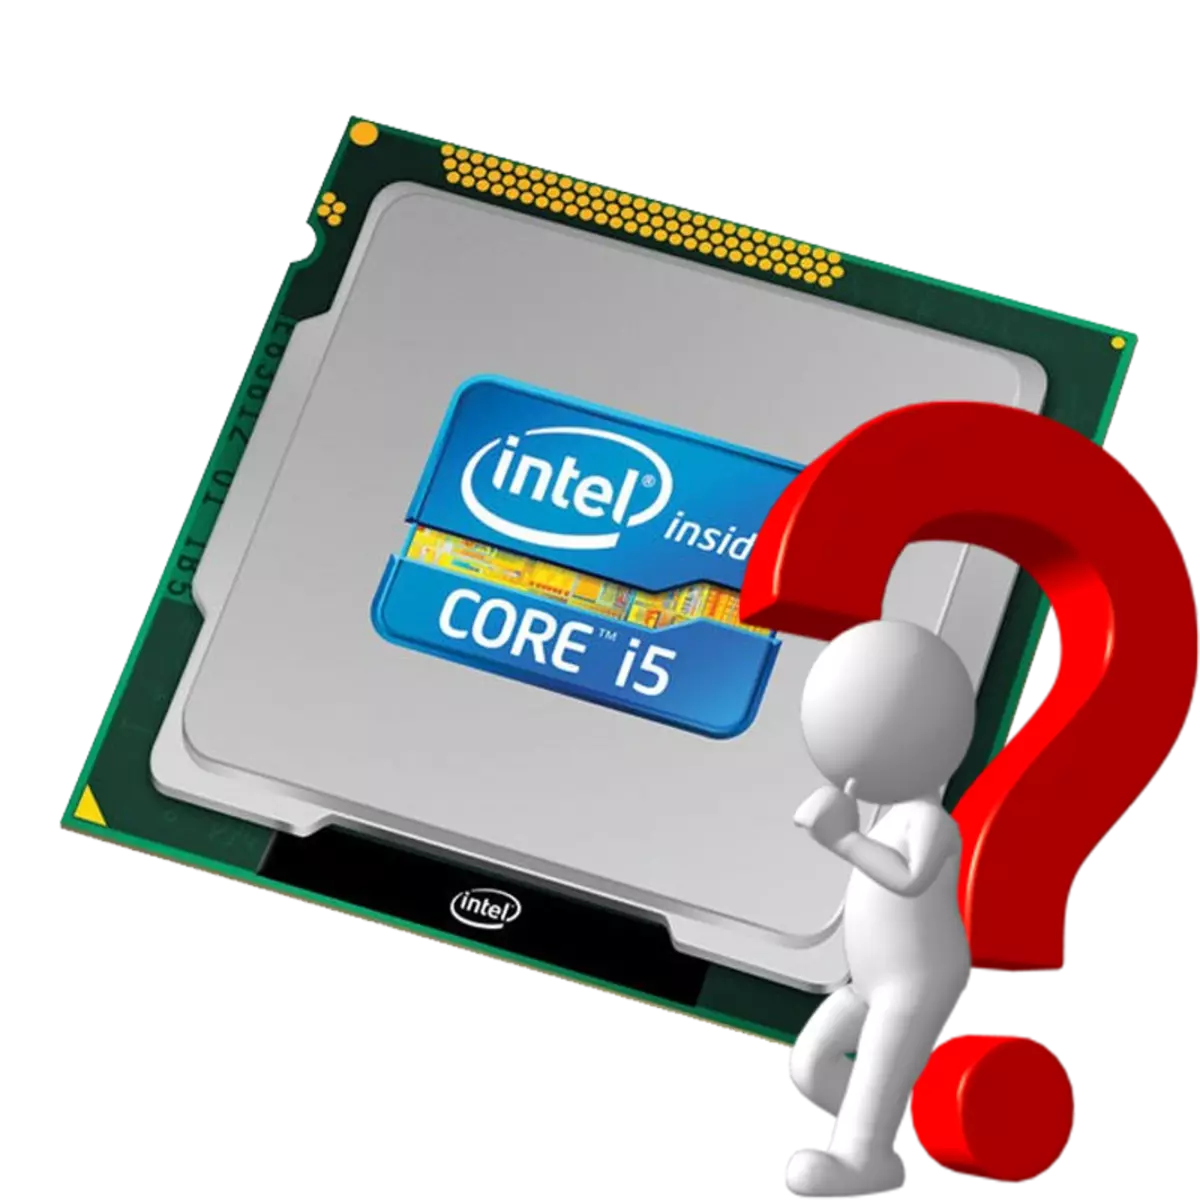 Paano malaman kung ano ang henerasyon ng Intel processor.